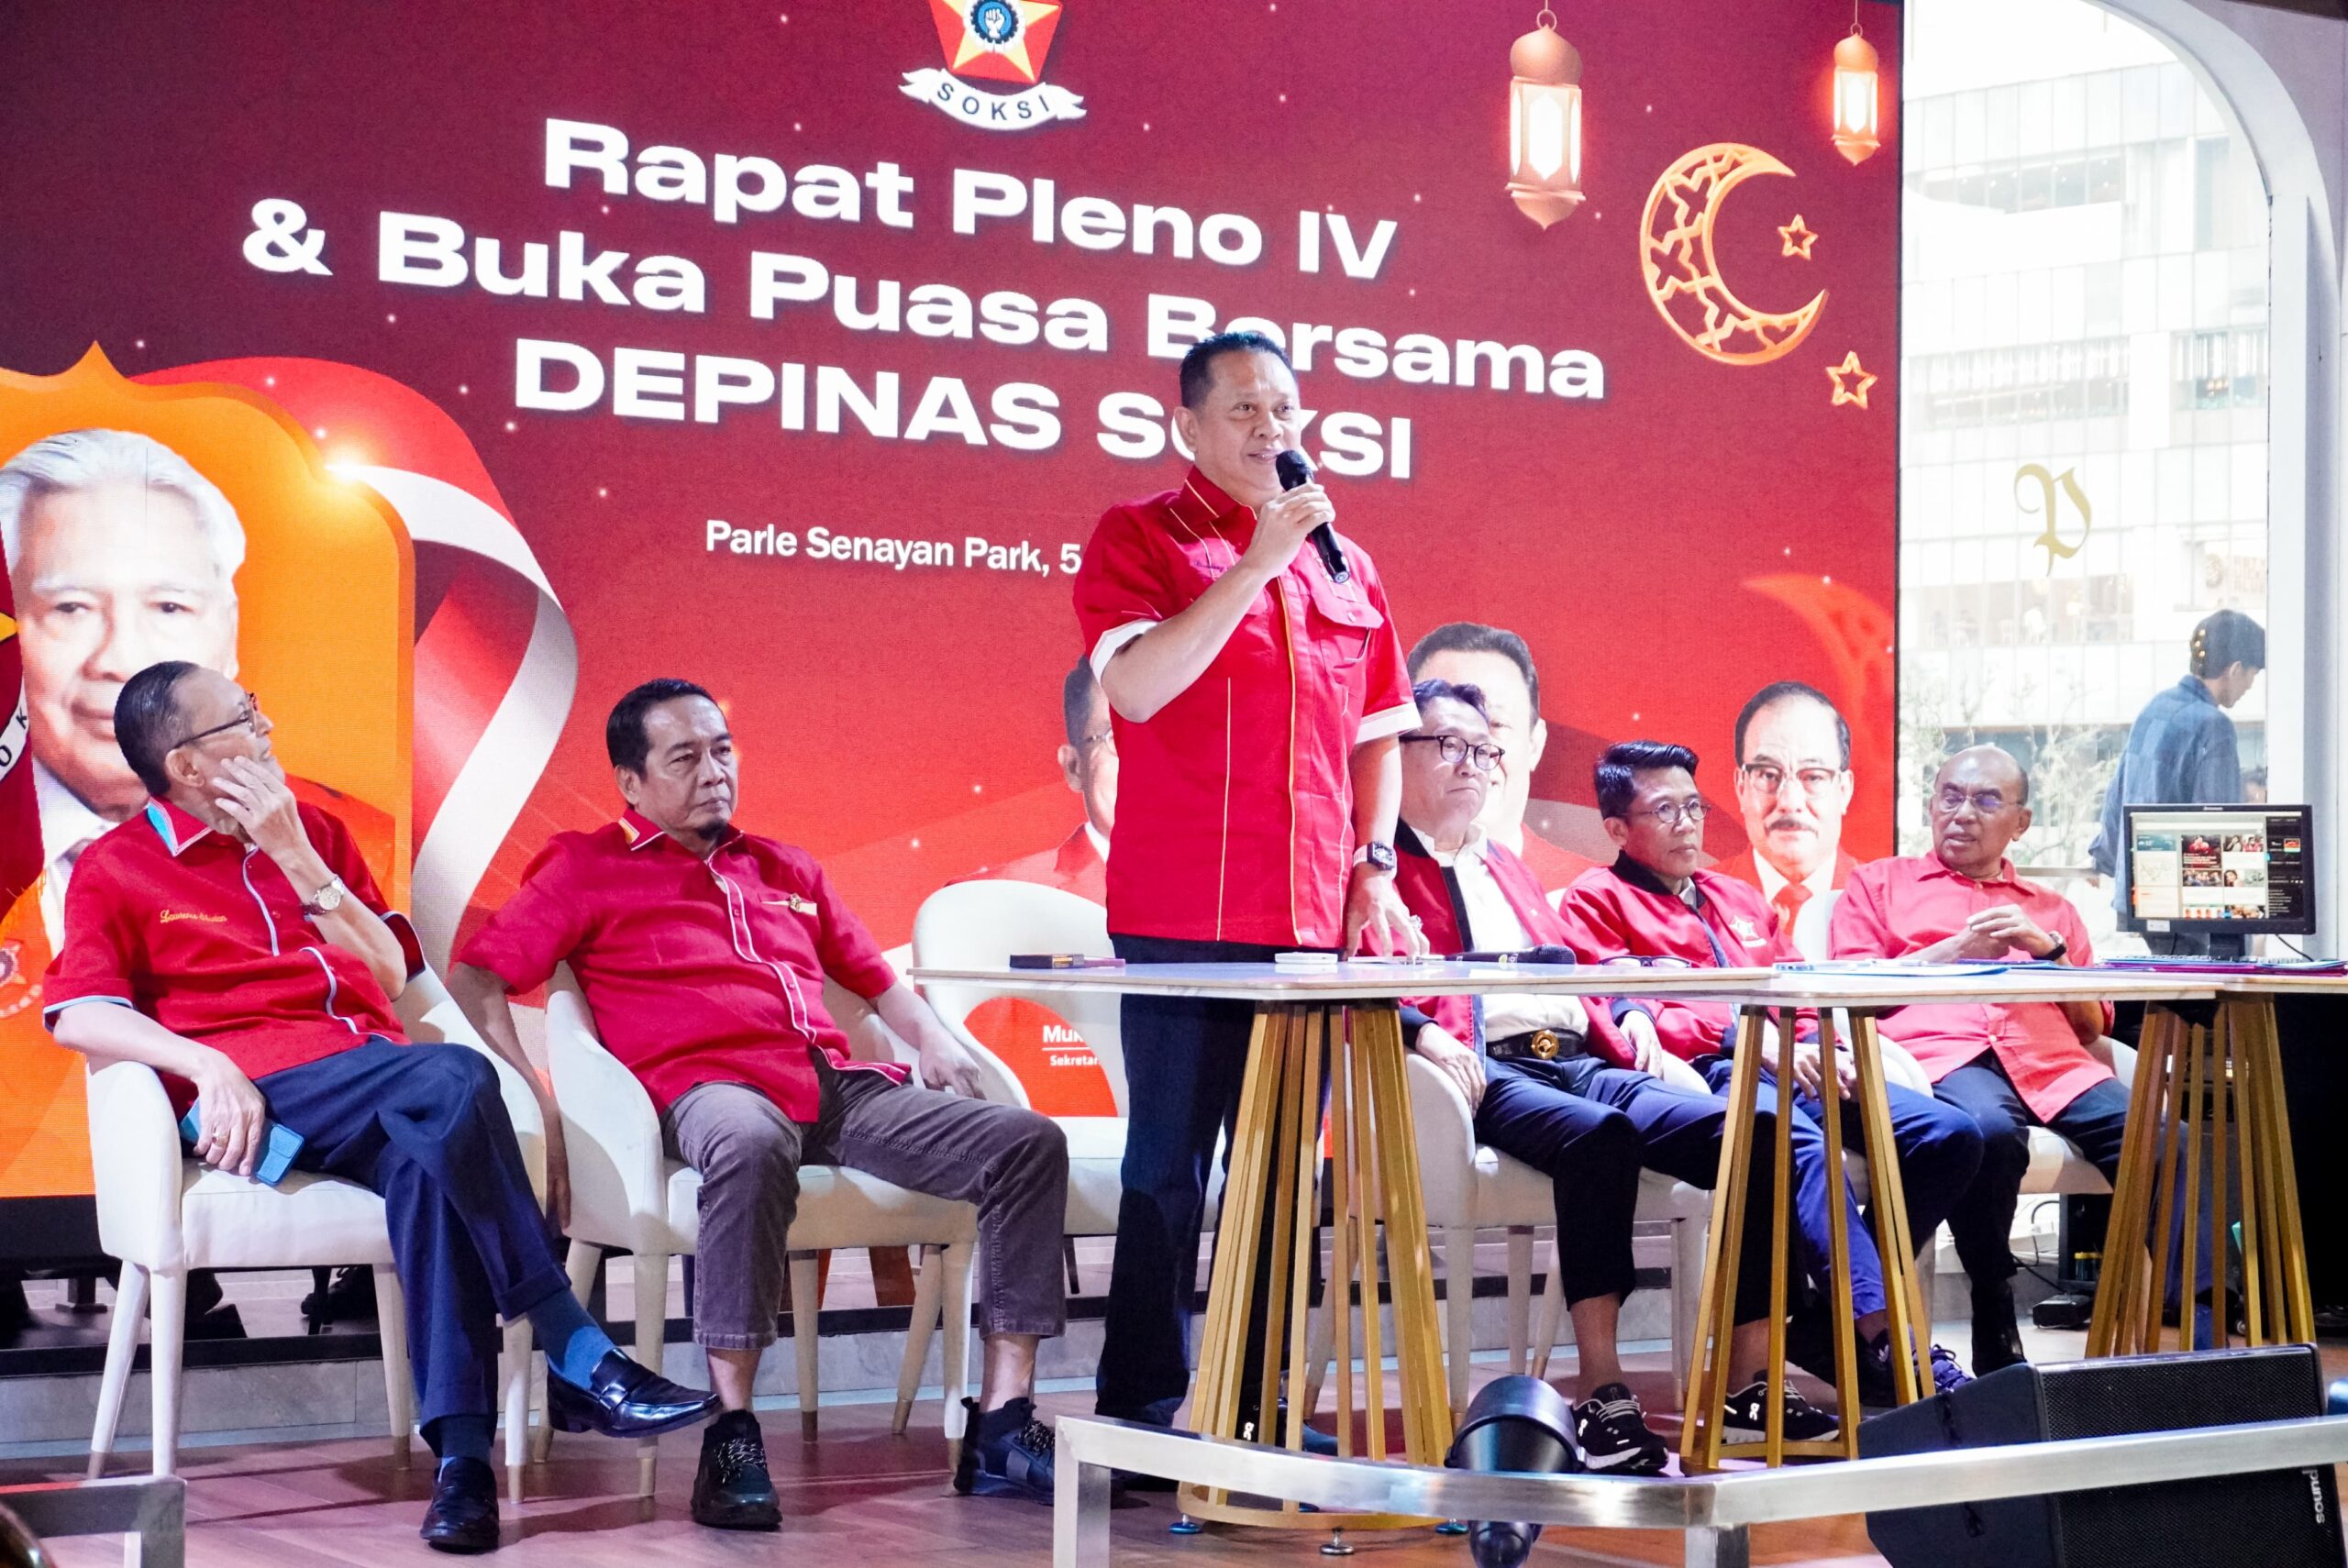 Rapat Pleno Depinas SOKSI, Bamsoet Tegaskan SOKSI Apresiasi Kepemimpinan Arilangga yang Siap Kawal Pemerintahan Prabowo-Gibran